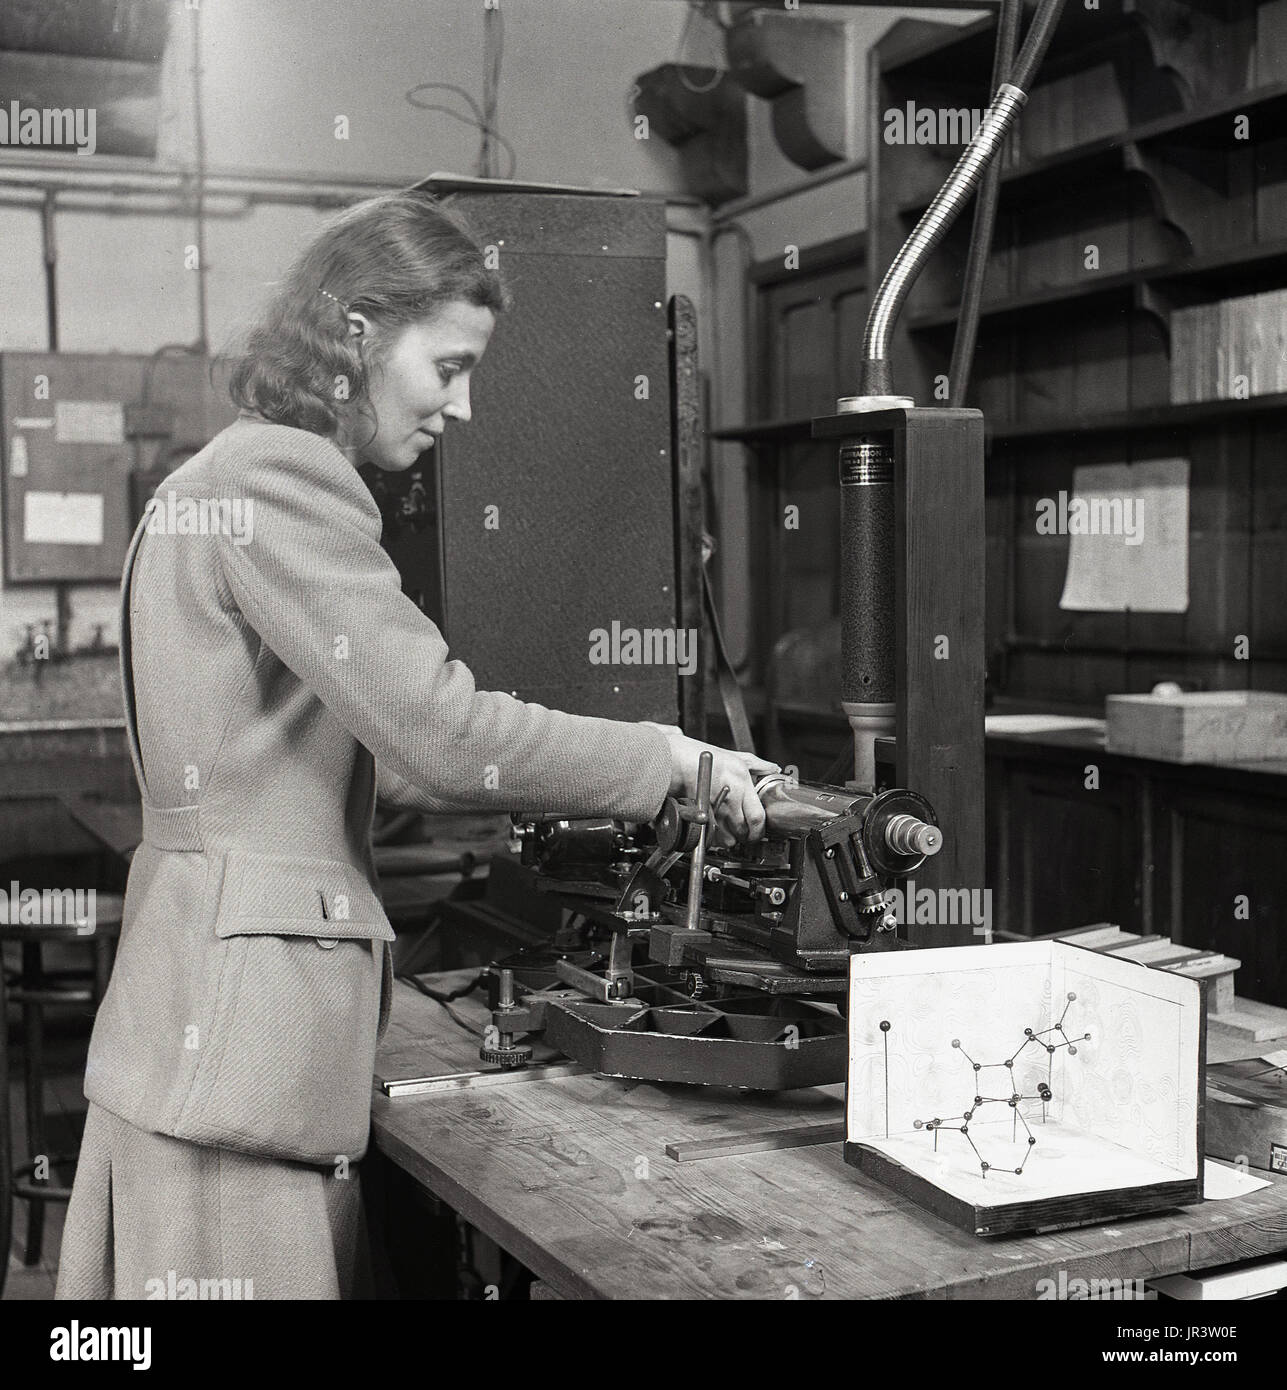 1951, historische, weiblicher Mathematiker in den weißen Mantel an einer Werkbank Berechnungen in einer Arbeit Buch verwenden, ein Lineal, einen rechenschieber und einem Kugel-stab-Modell, England, UK. Stockfoto